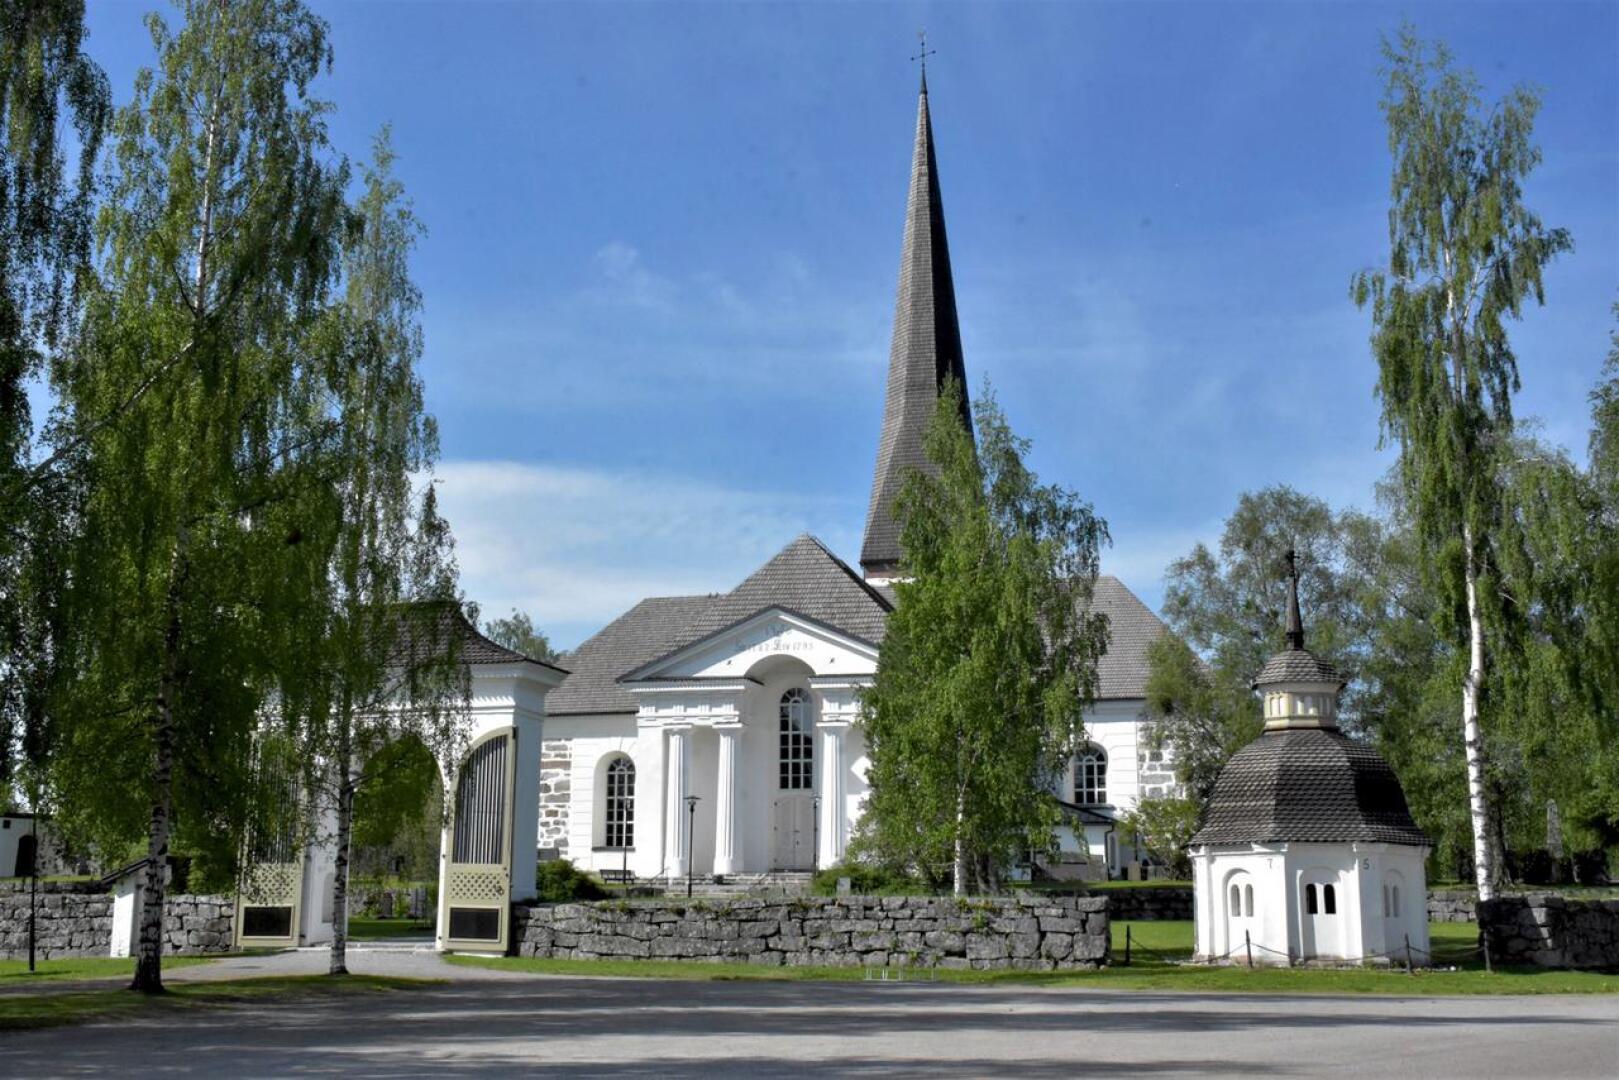 Pedersören uusi kirkkoherra on valittu. Kuvituskuva Pedersören kirkosta.